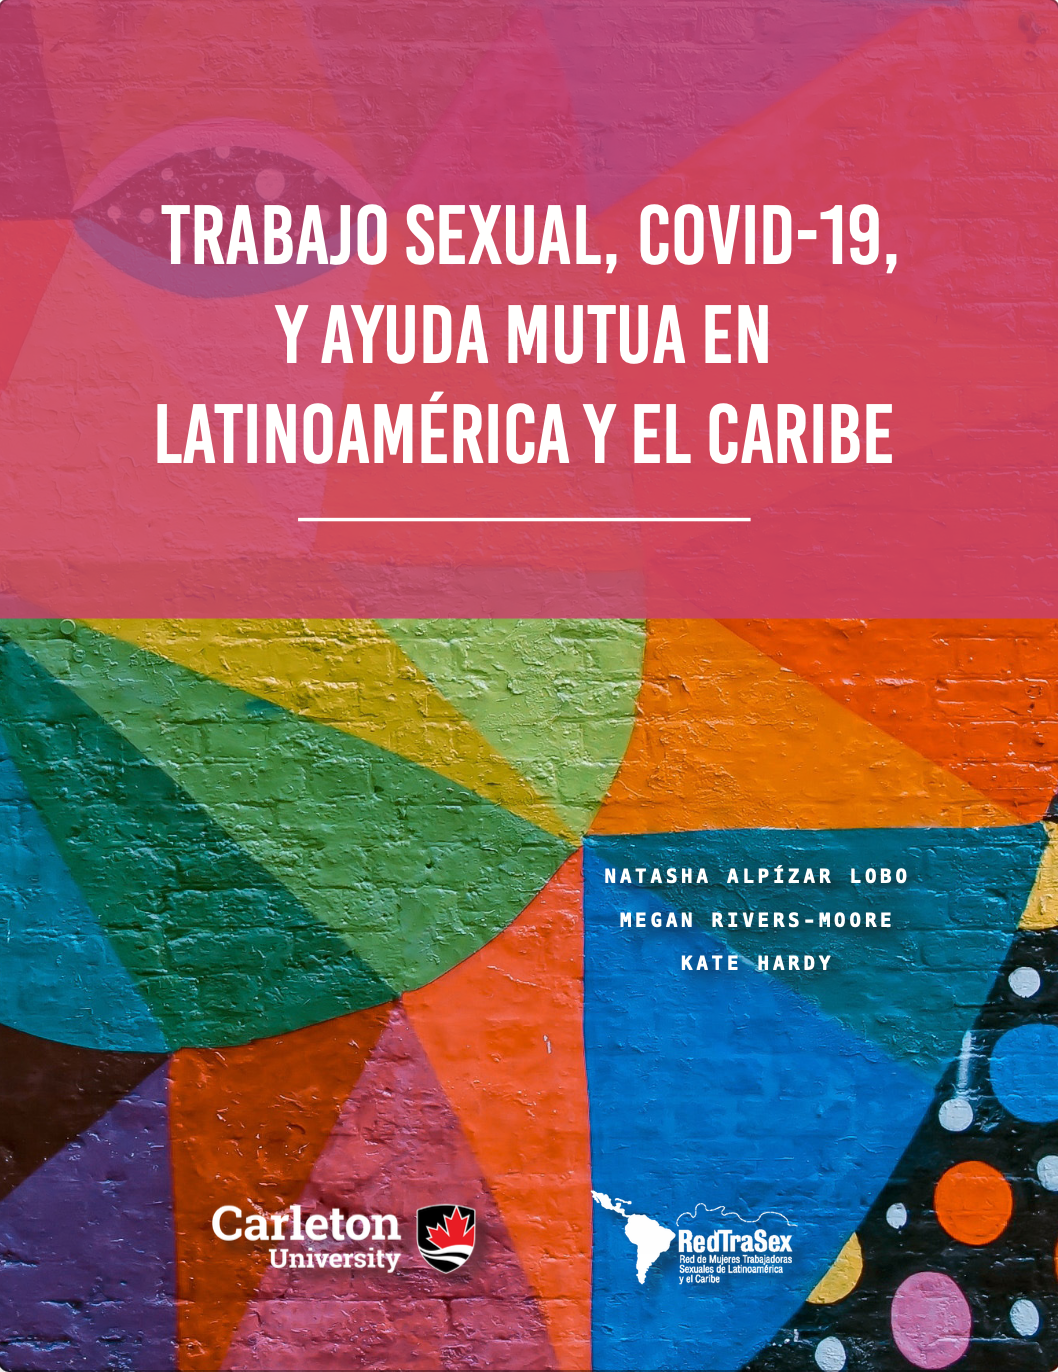 https://carleton.ca/fist/wp-content/uploads/Trabajo-Sexual-COVID-19-y-Ayuda-Mutua-en-Latinoamérica-y-el-Caribe.pdf